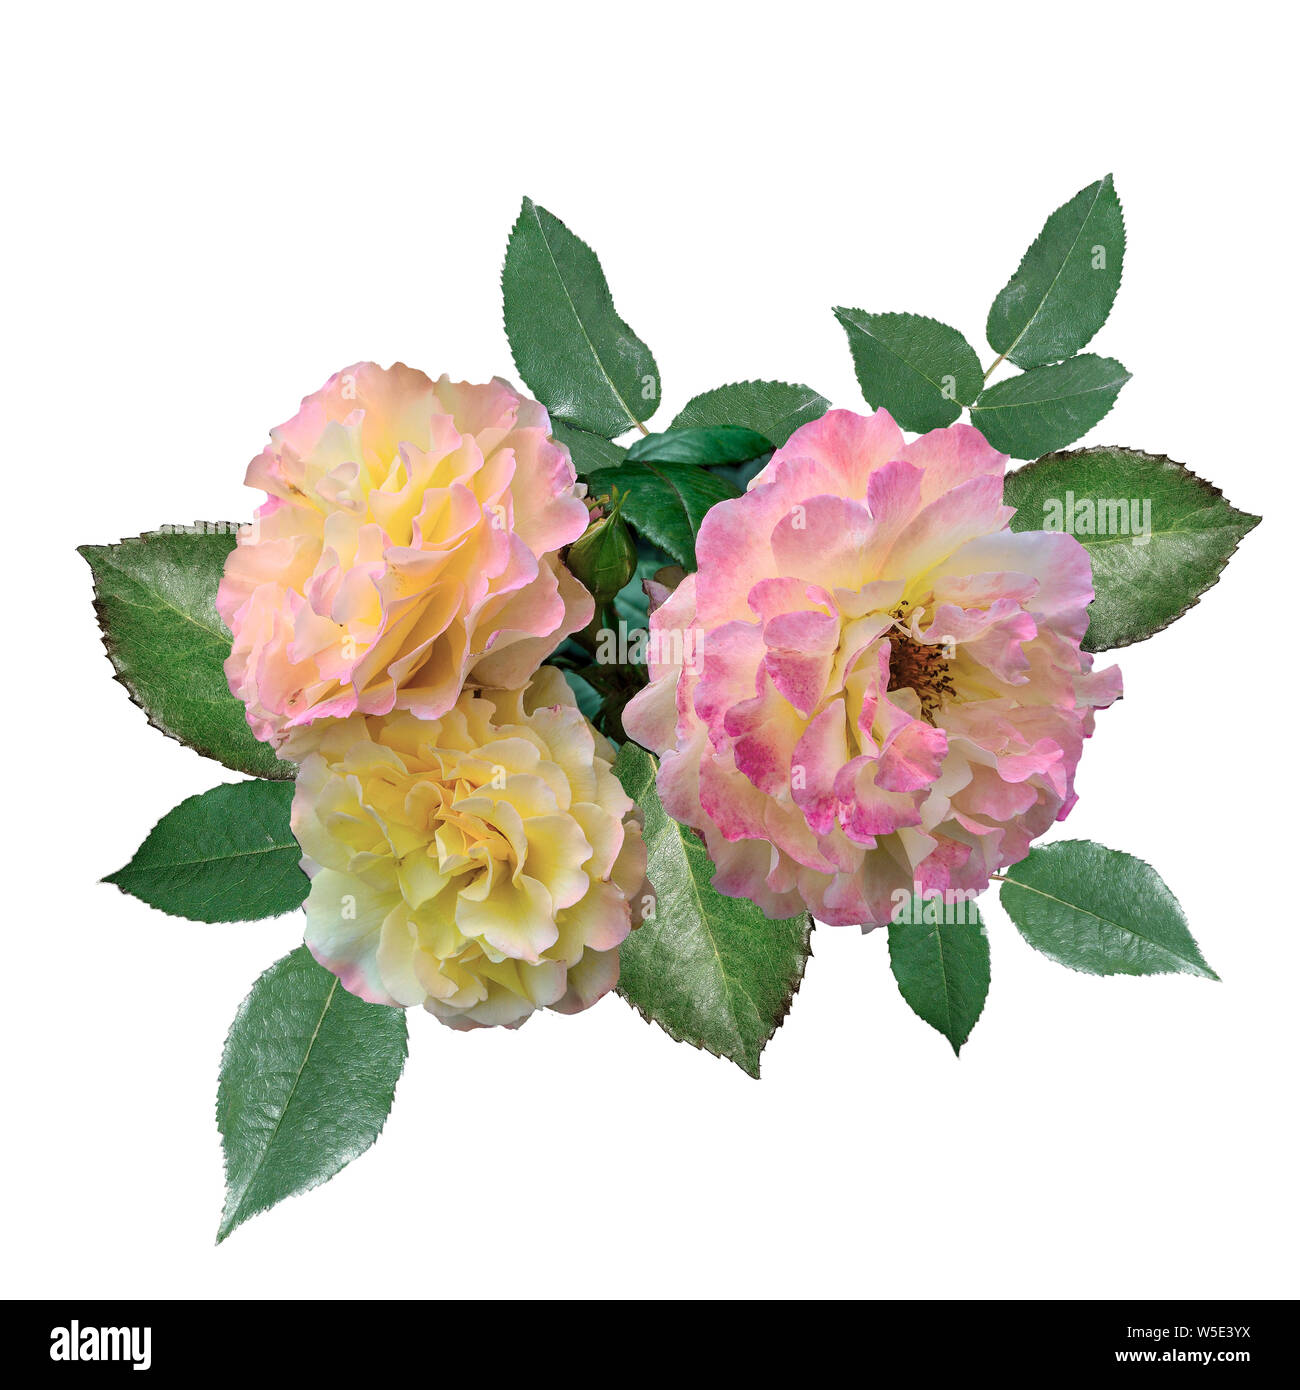 Drei zarte Rosen mit rosa-gelben Blütenblättern und grüne Blätter in der Nähe auf weißem Hintergrund. Schönen Blumenstrauß sanfte rosa Blüten Stockfoto